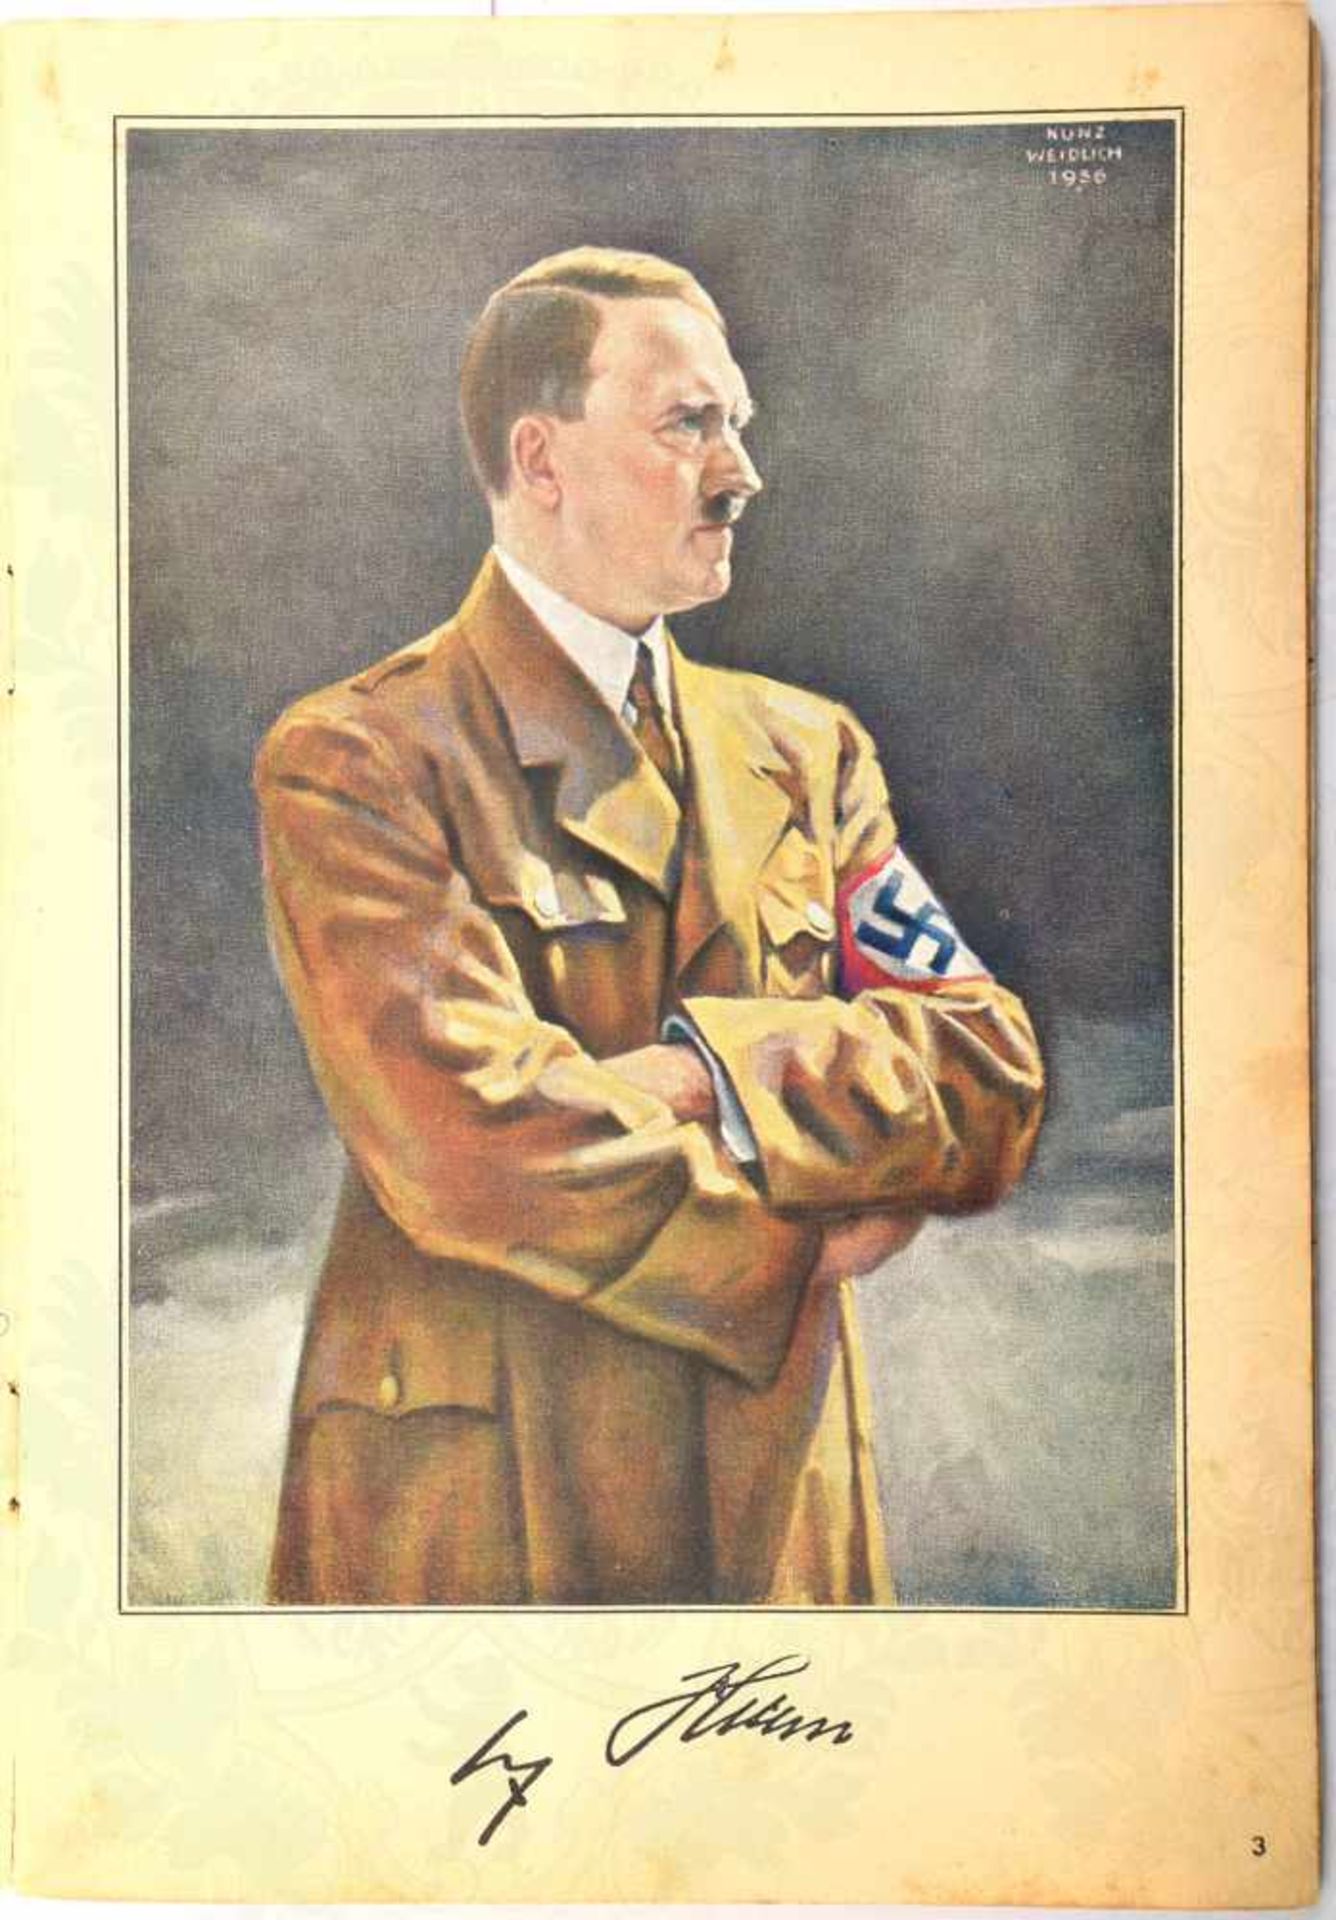 DAS FÜHRERKORPS DES DRITTEN REICHES, Hrsg. Oberhessische Tageszeitung Giessen 1937, 62 von 66 - Bild 2 aus 3